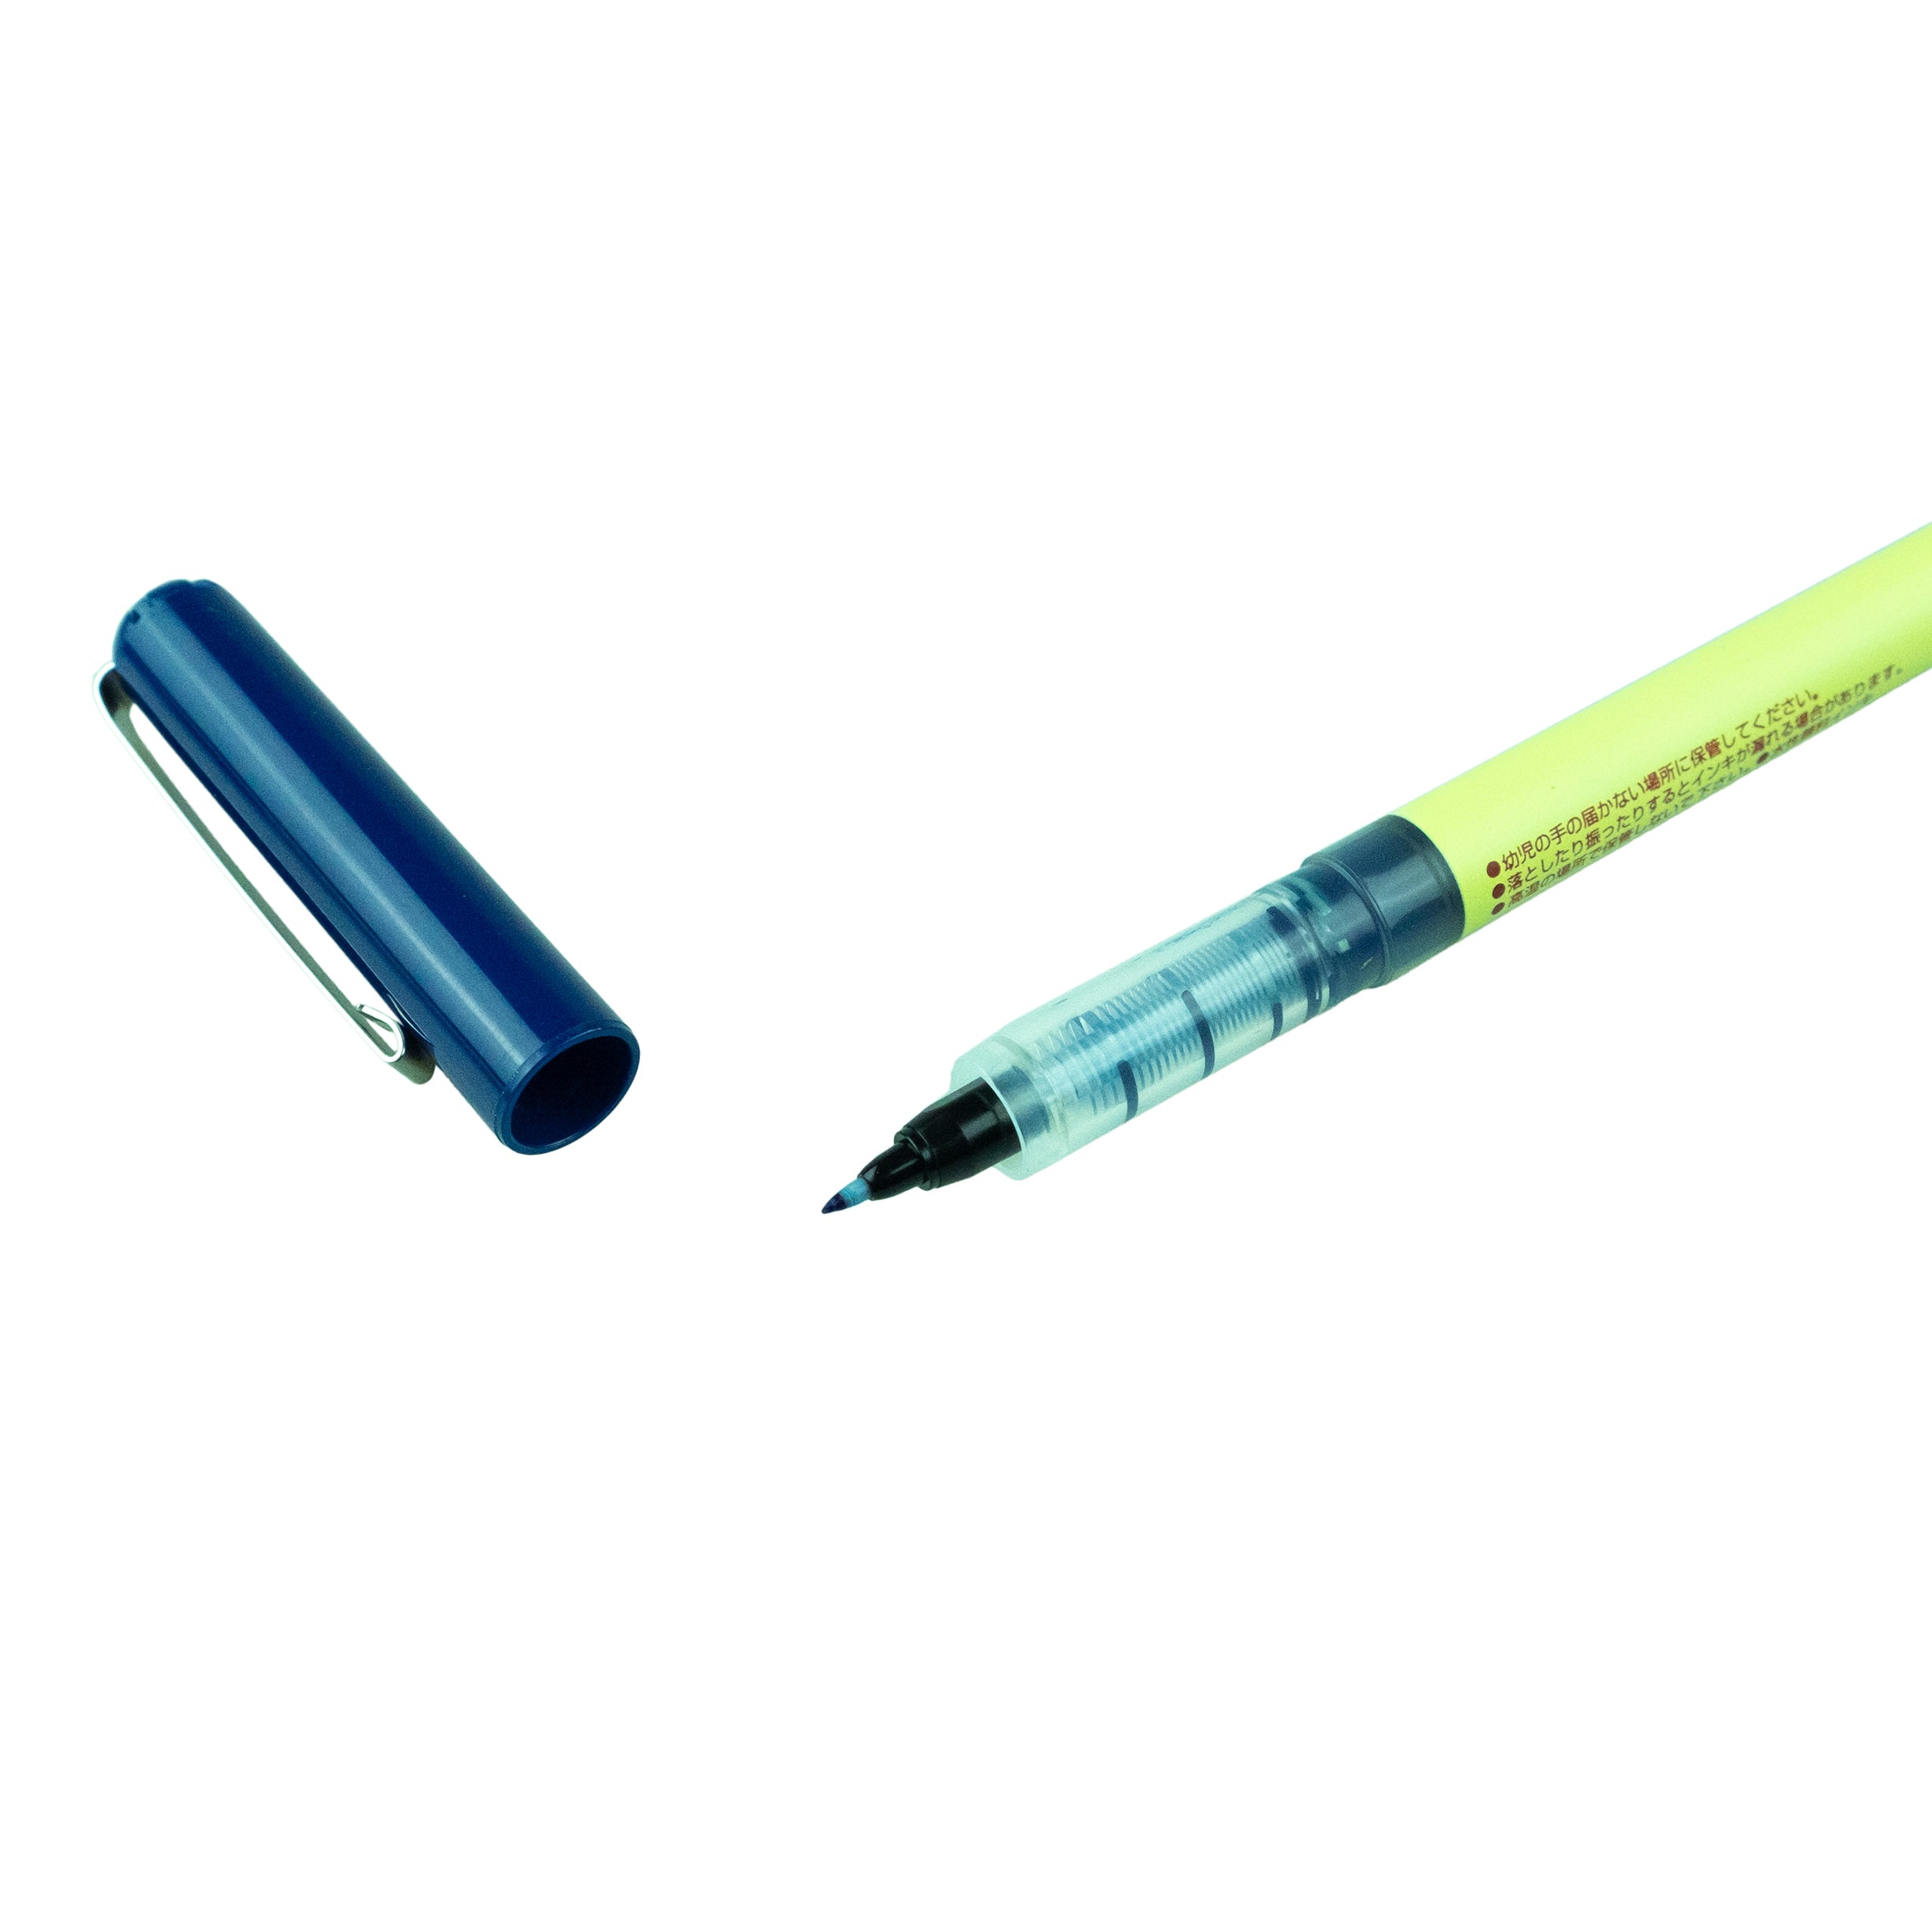 Kuretake-ZIG Fudegokochi Fine Tip Brush Pen